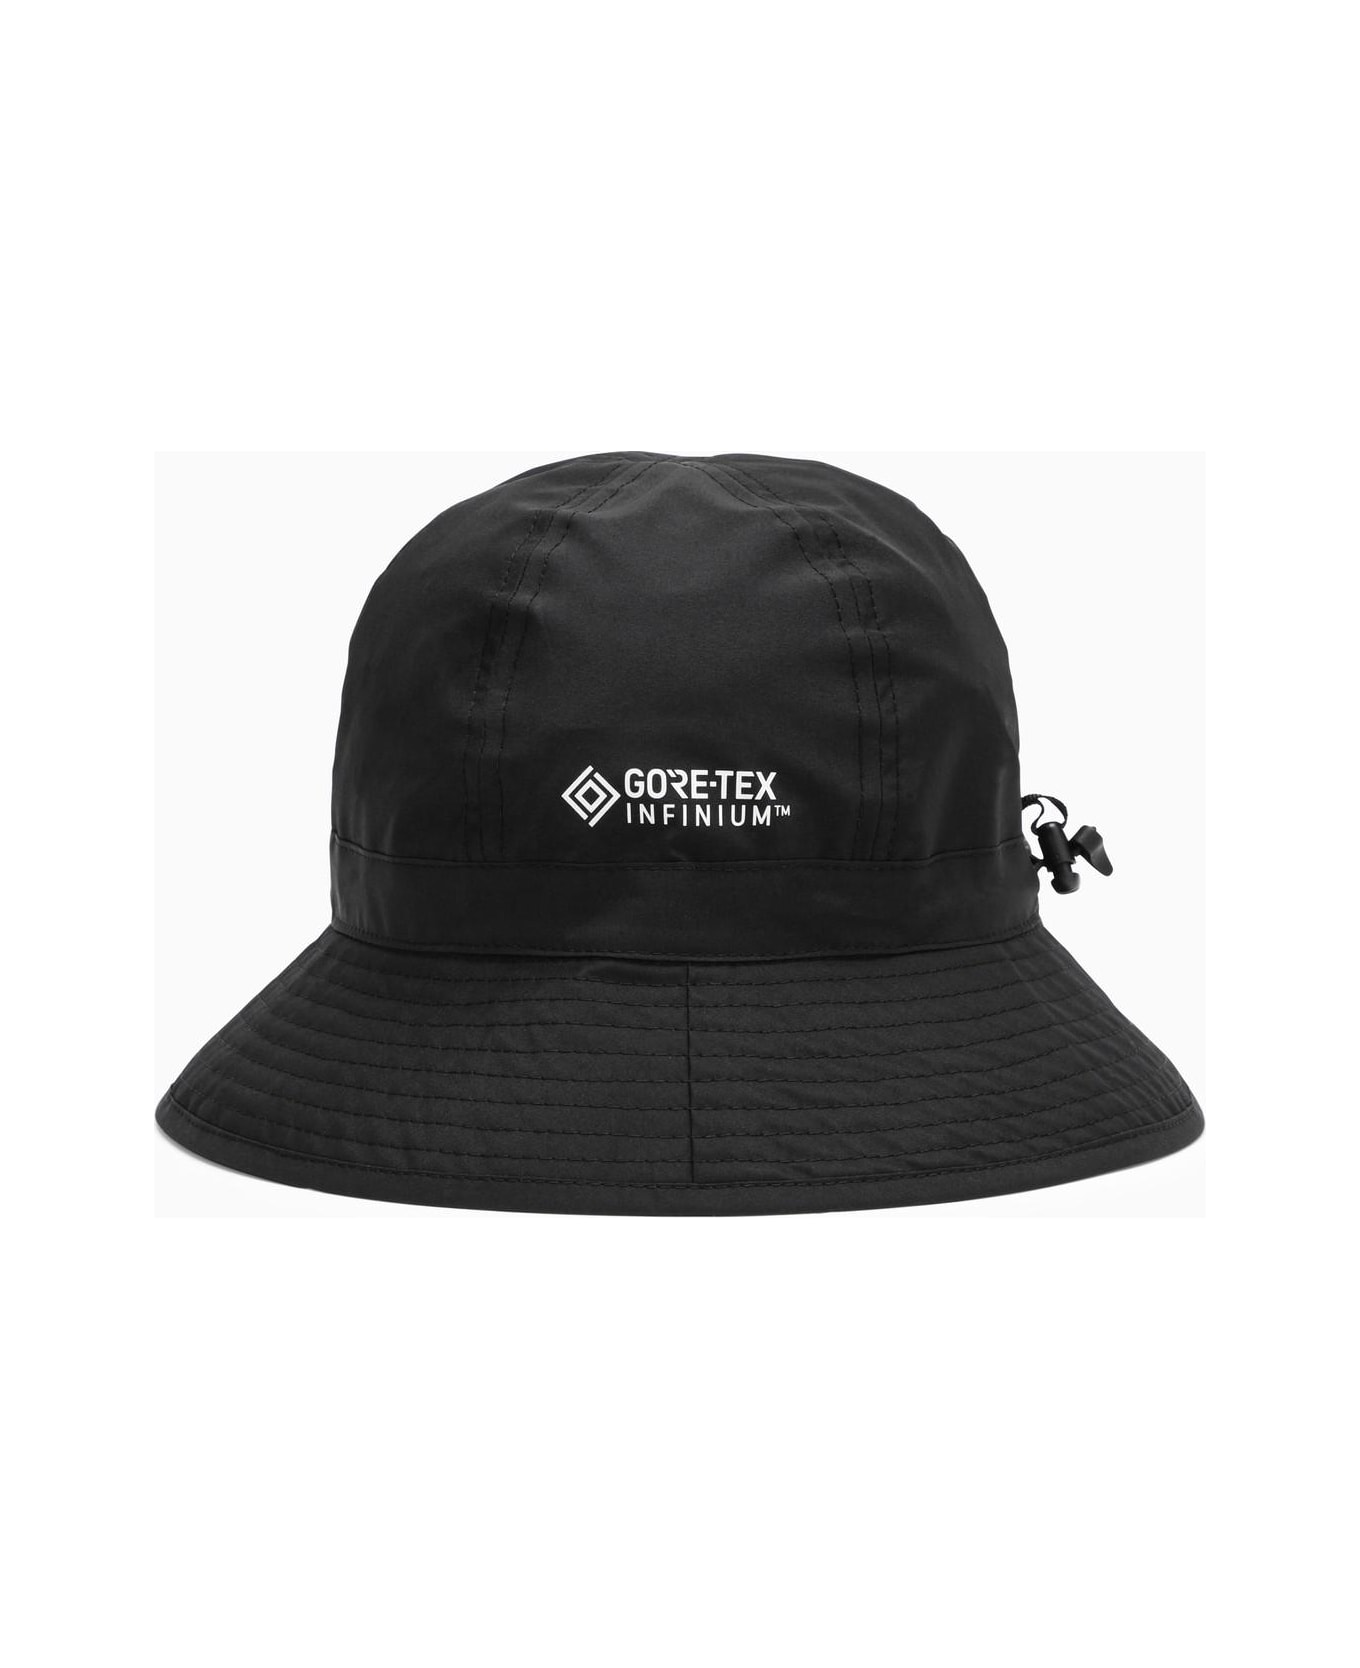 Moncler Genius Nylon Black Hat - Nero